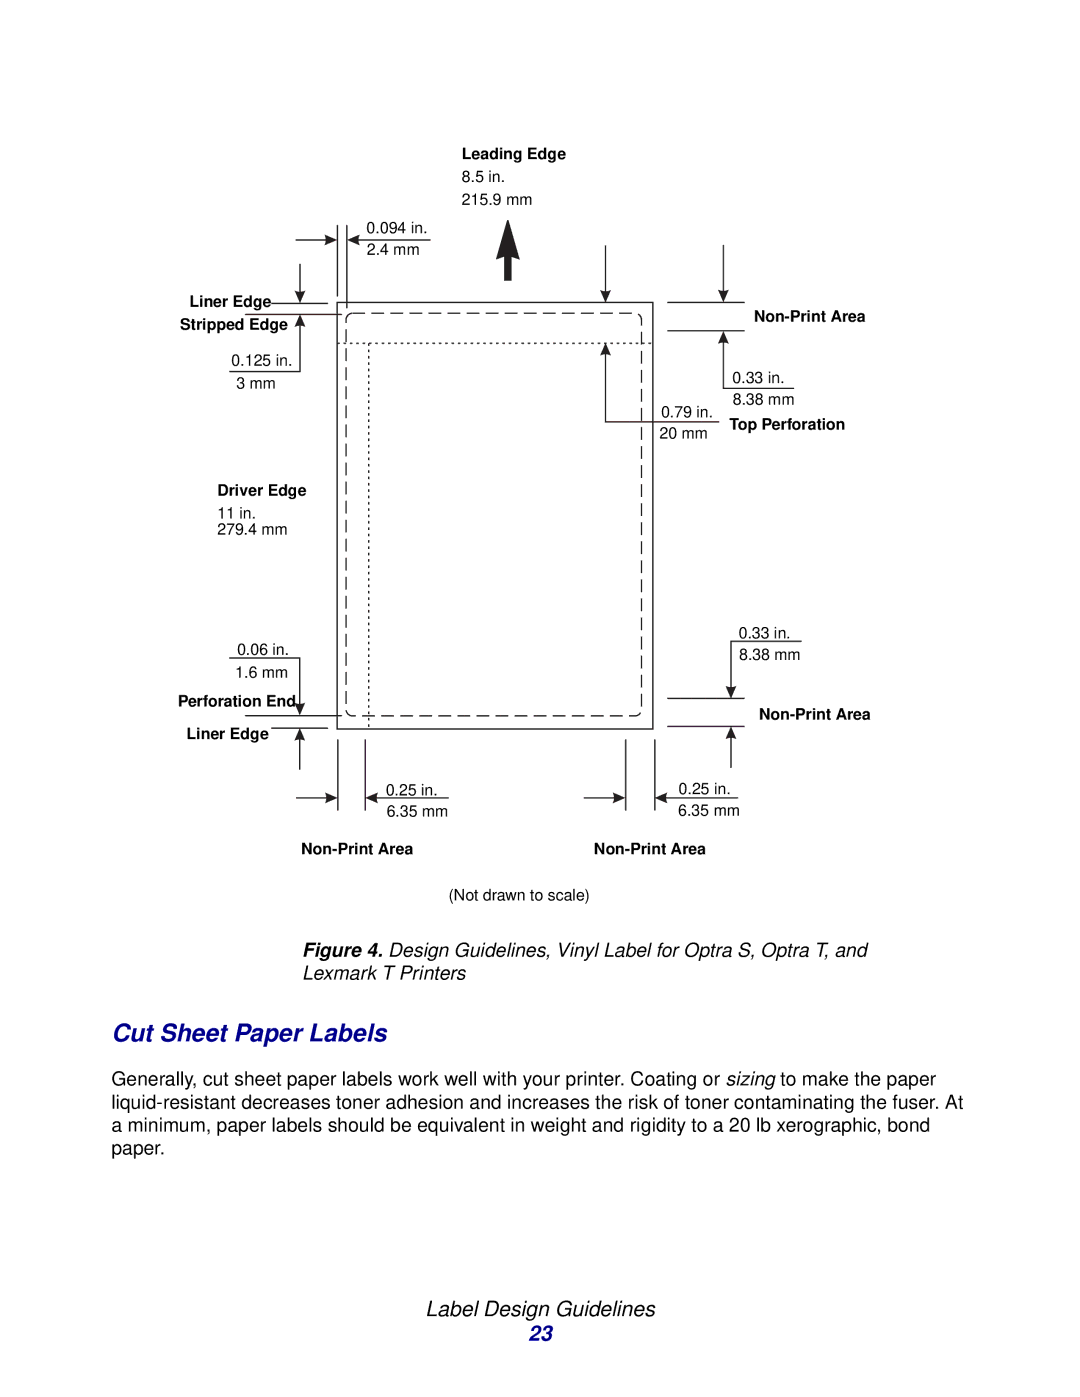 Lexmark Laser Printers manual Cut Sheet Paper Labels 